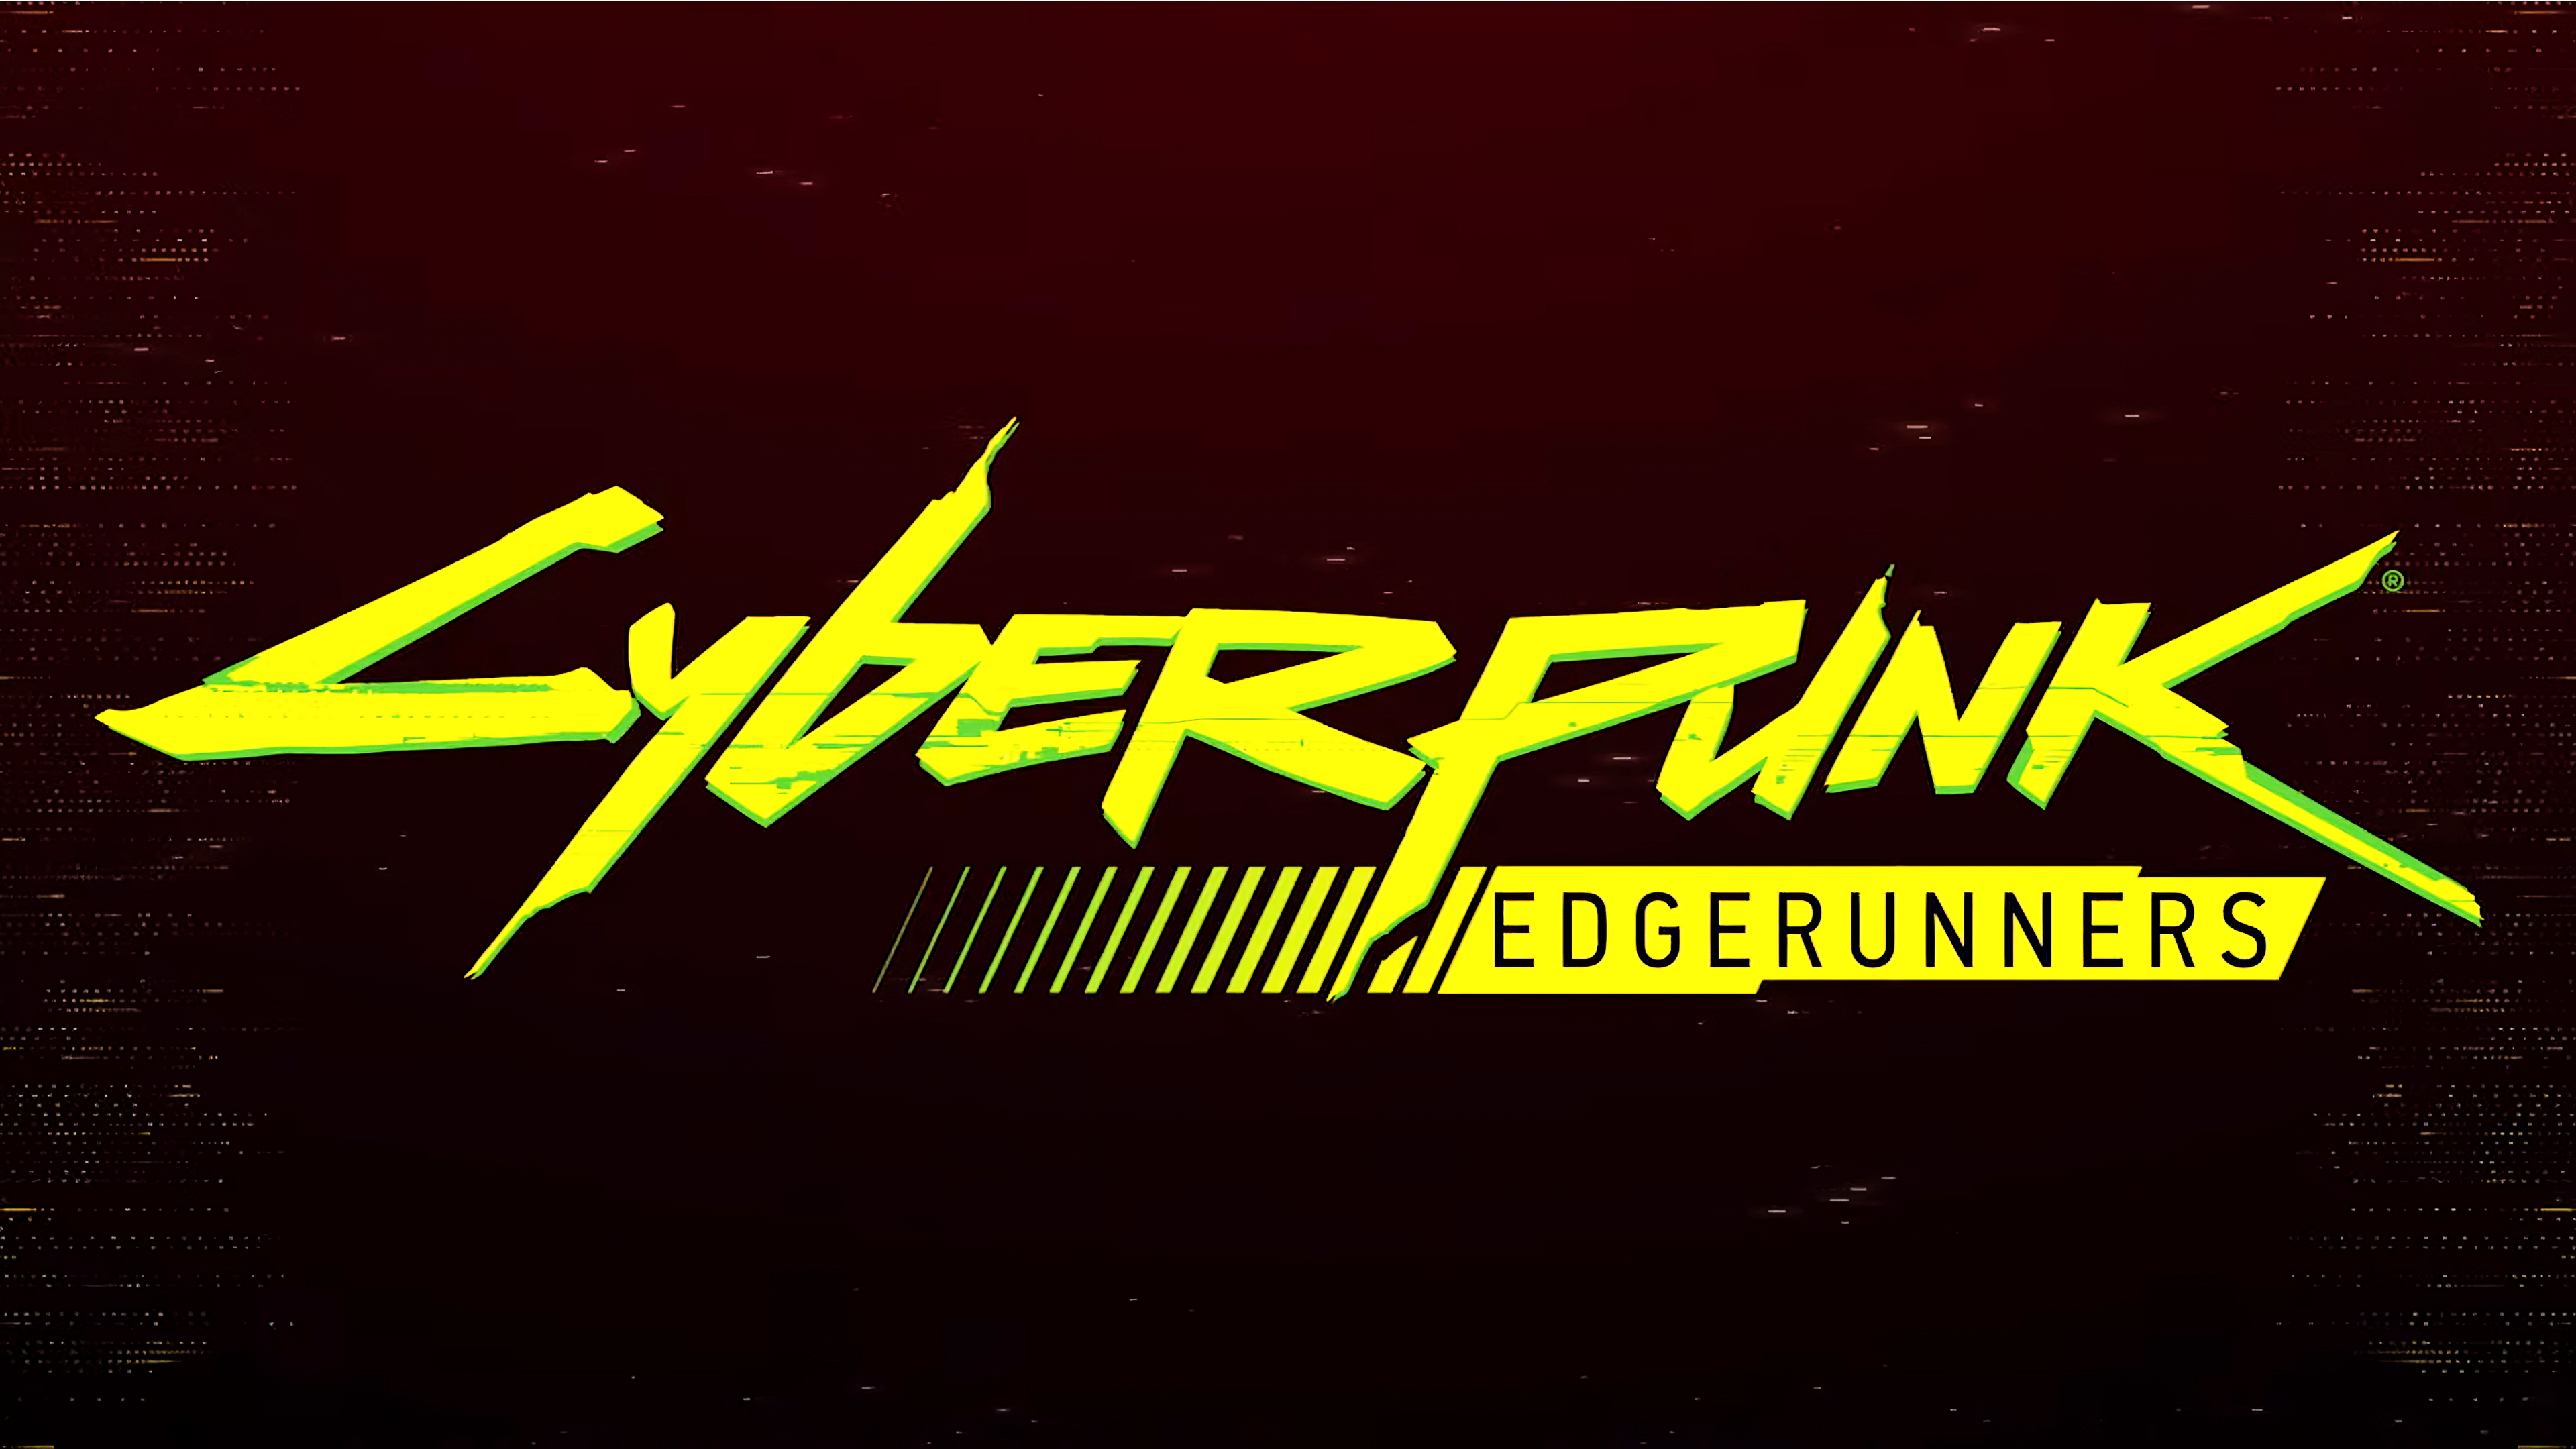 Cyberpunk Edgerunners Cyberpunk 2077 CD Projekt RED Trigger Anime STUDiO MASSKET Netflix TV Series 4 3840x2160